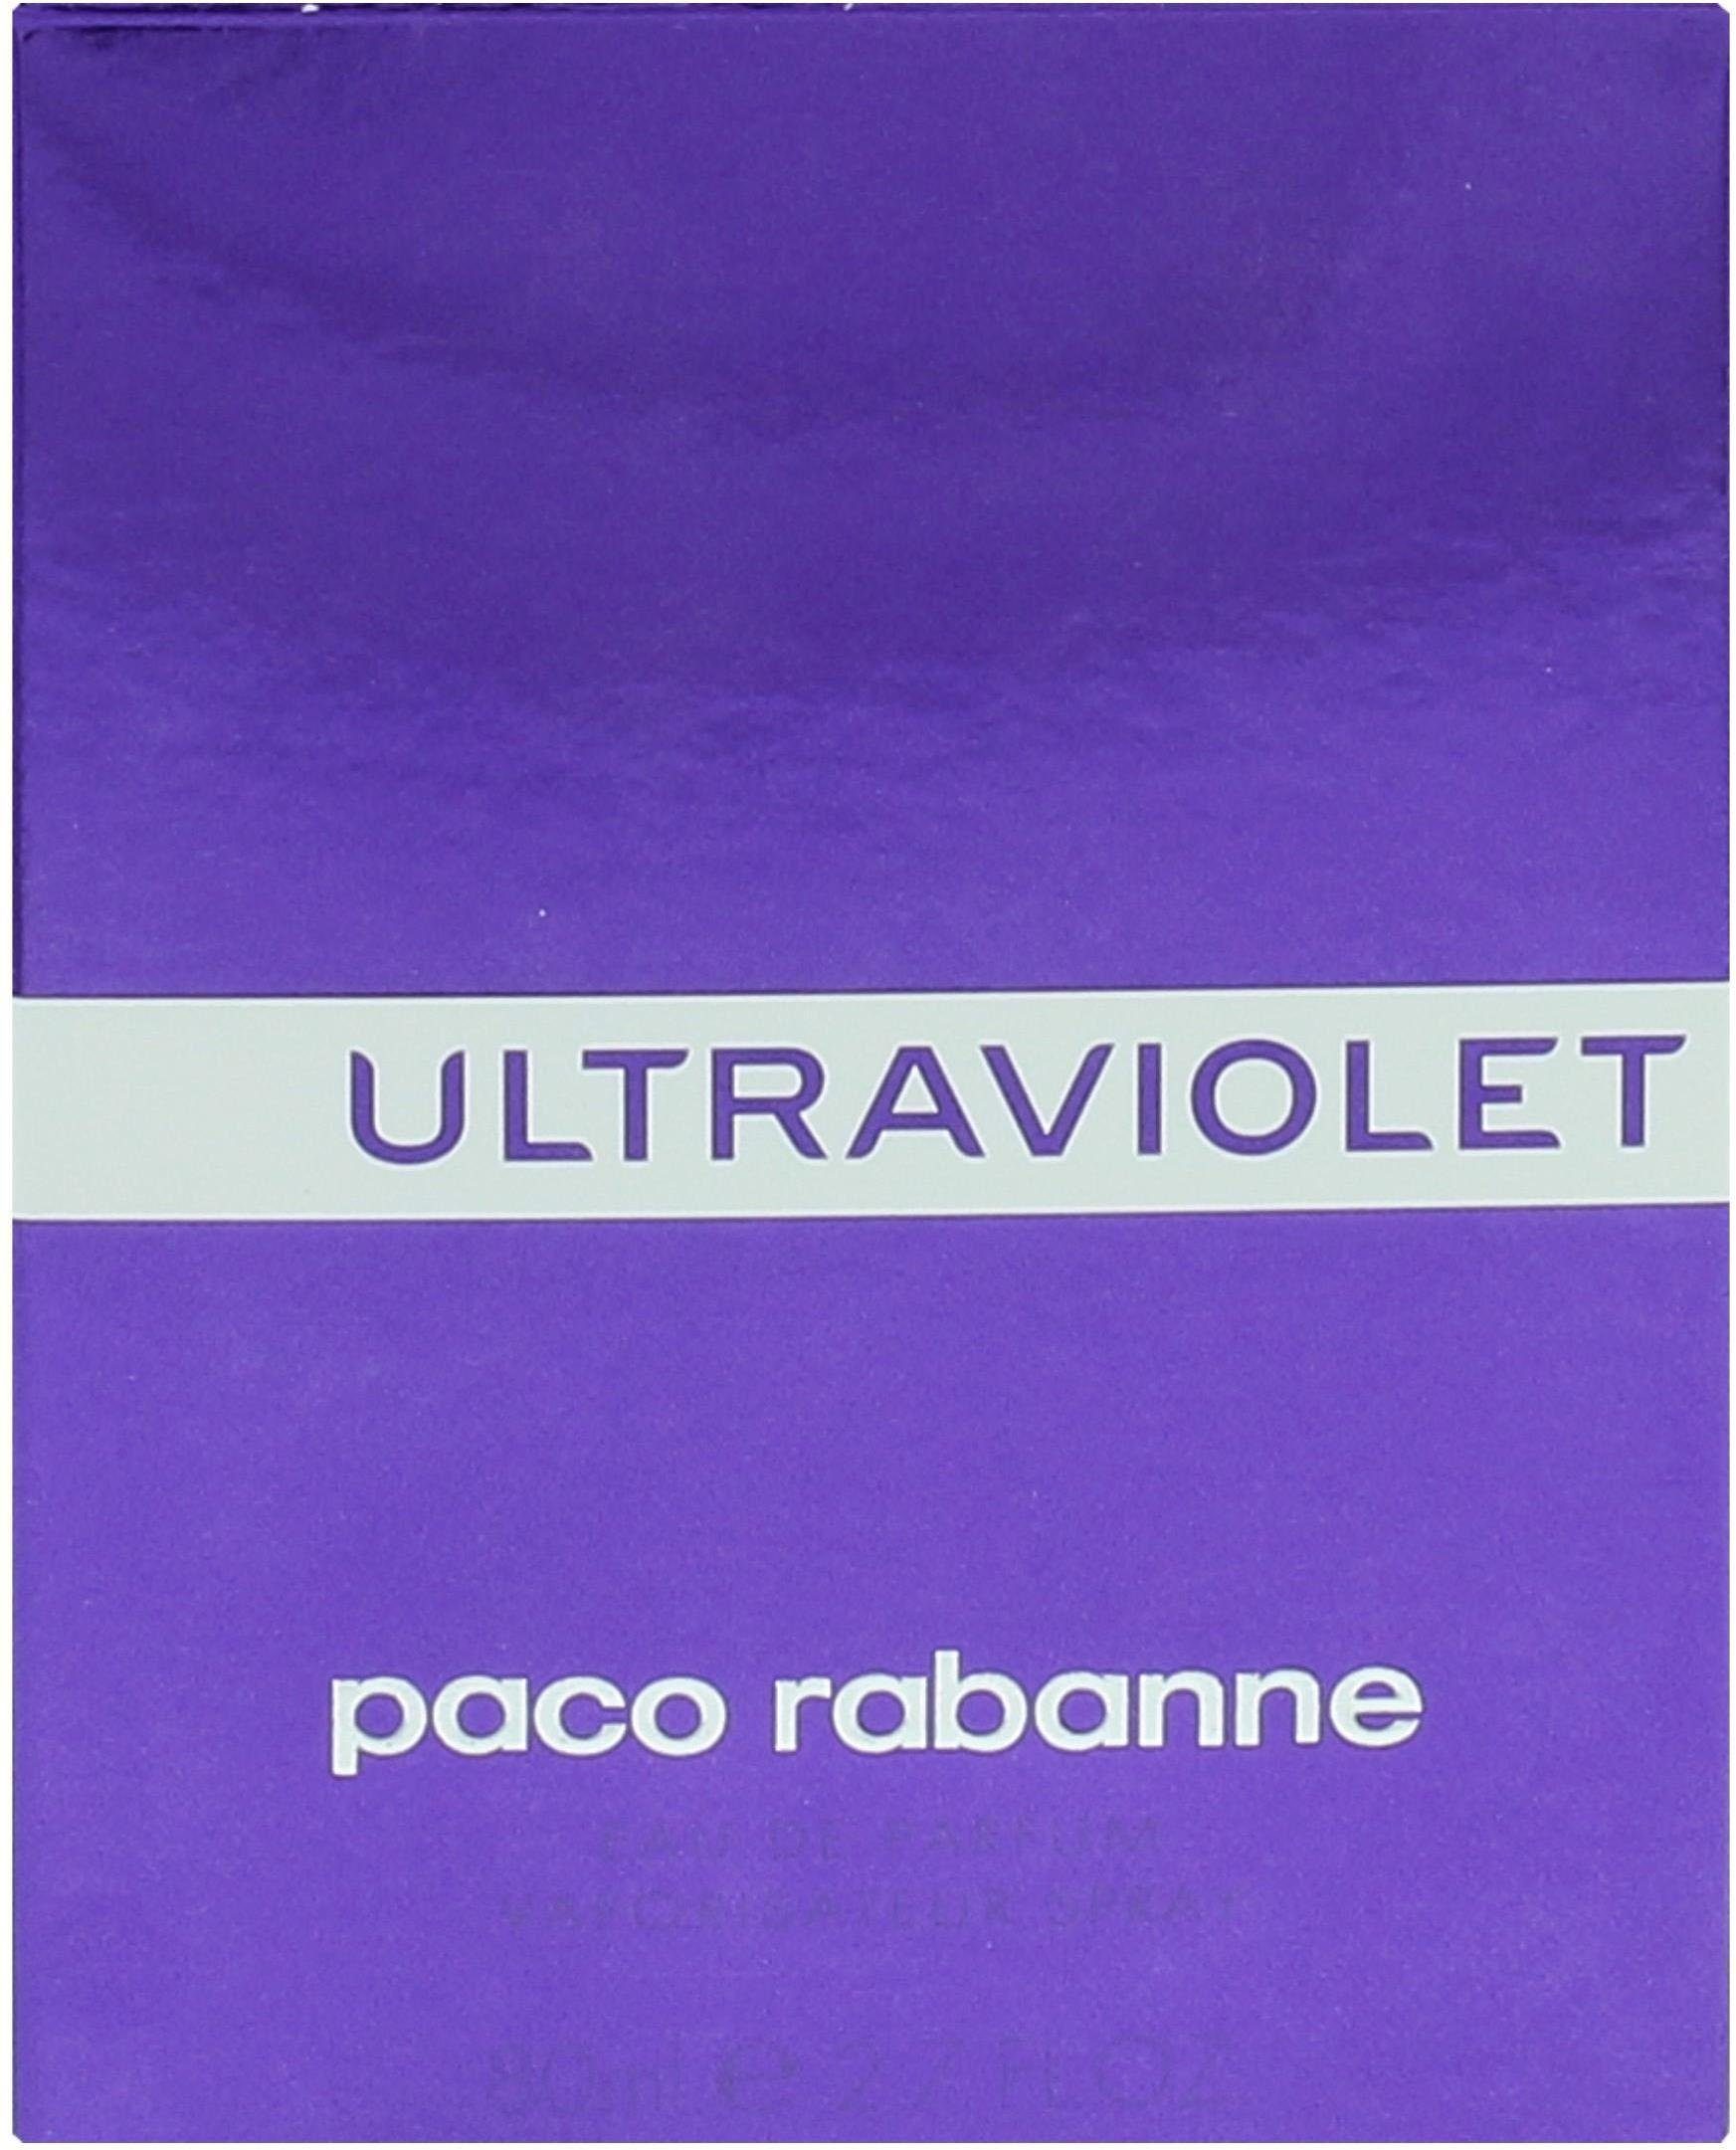 de paco Eau Woman Ultraviolet Parfum rabanne